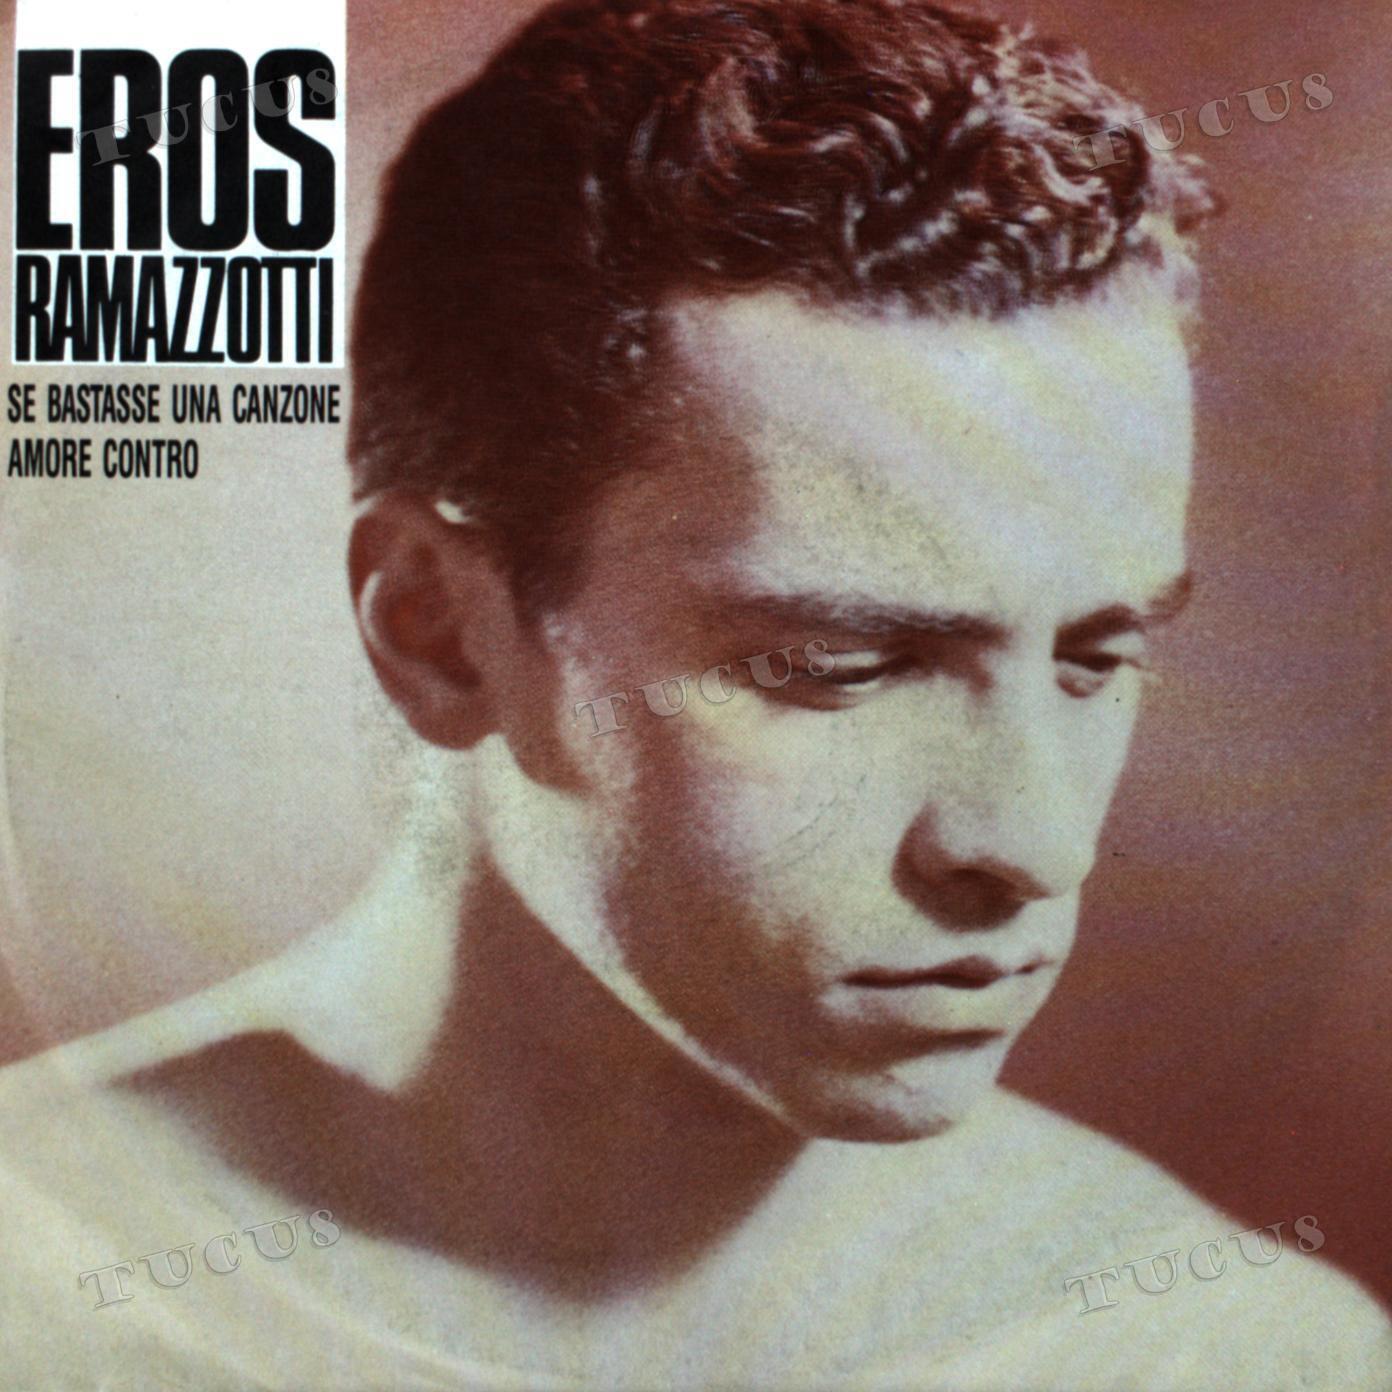 Eros Ramazzotti - Se Bastasse Una Canzone / Amore Contro 7" (VG+/VG+) '*